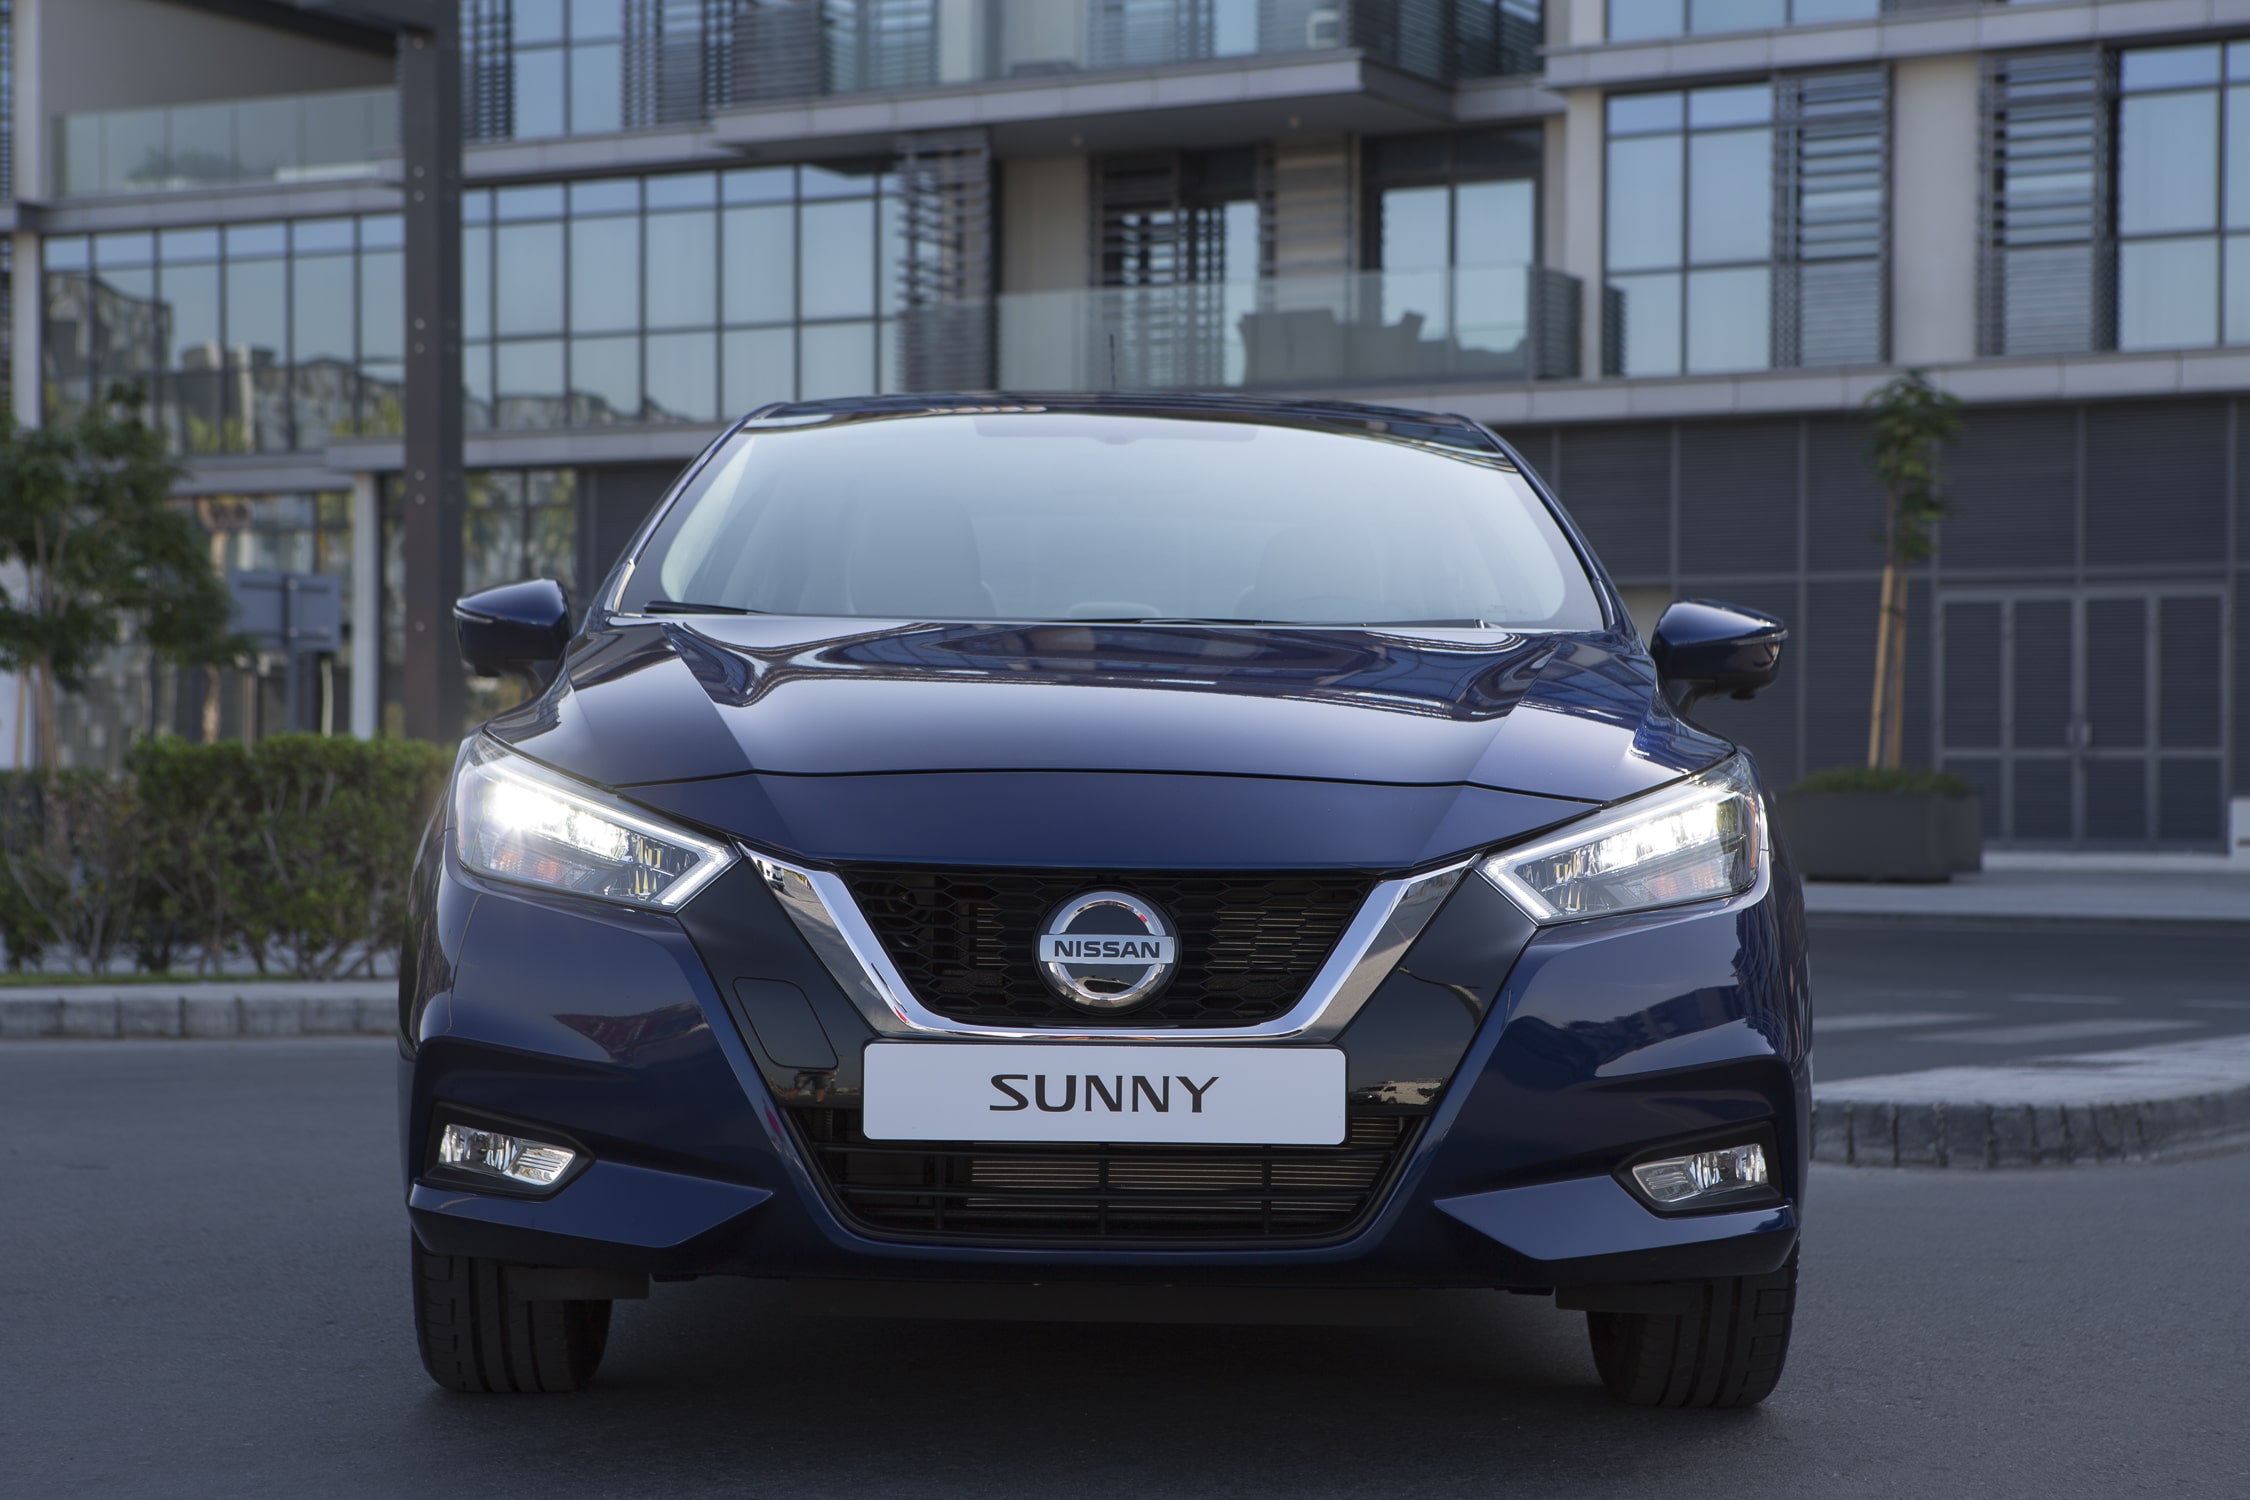 2020 Nissan Sunny